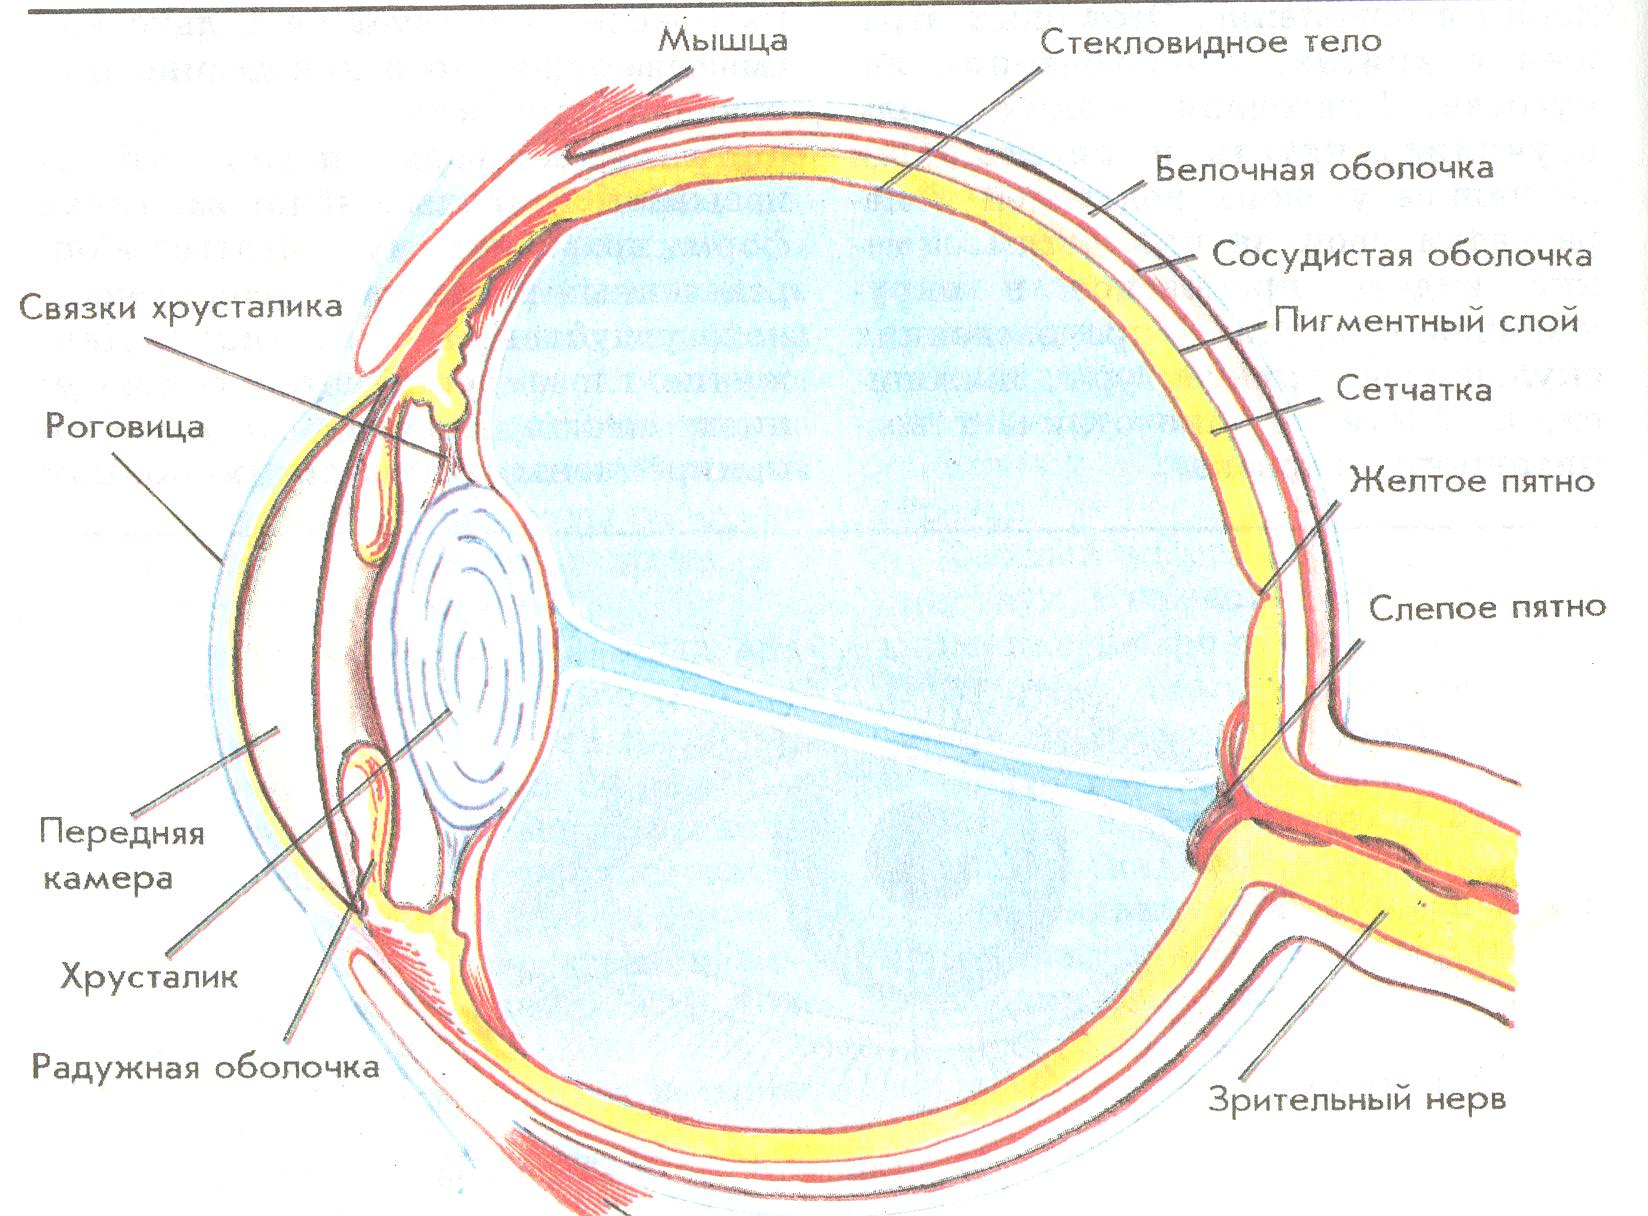 Сетчатка белочная оболочка сосудистая оболочка. Строение органа зрения (строение глазного яблока).. Схема глазного яблока глаза. Строение глазного яблока биология 8 класс. Схематическое строение глазного яблока.